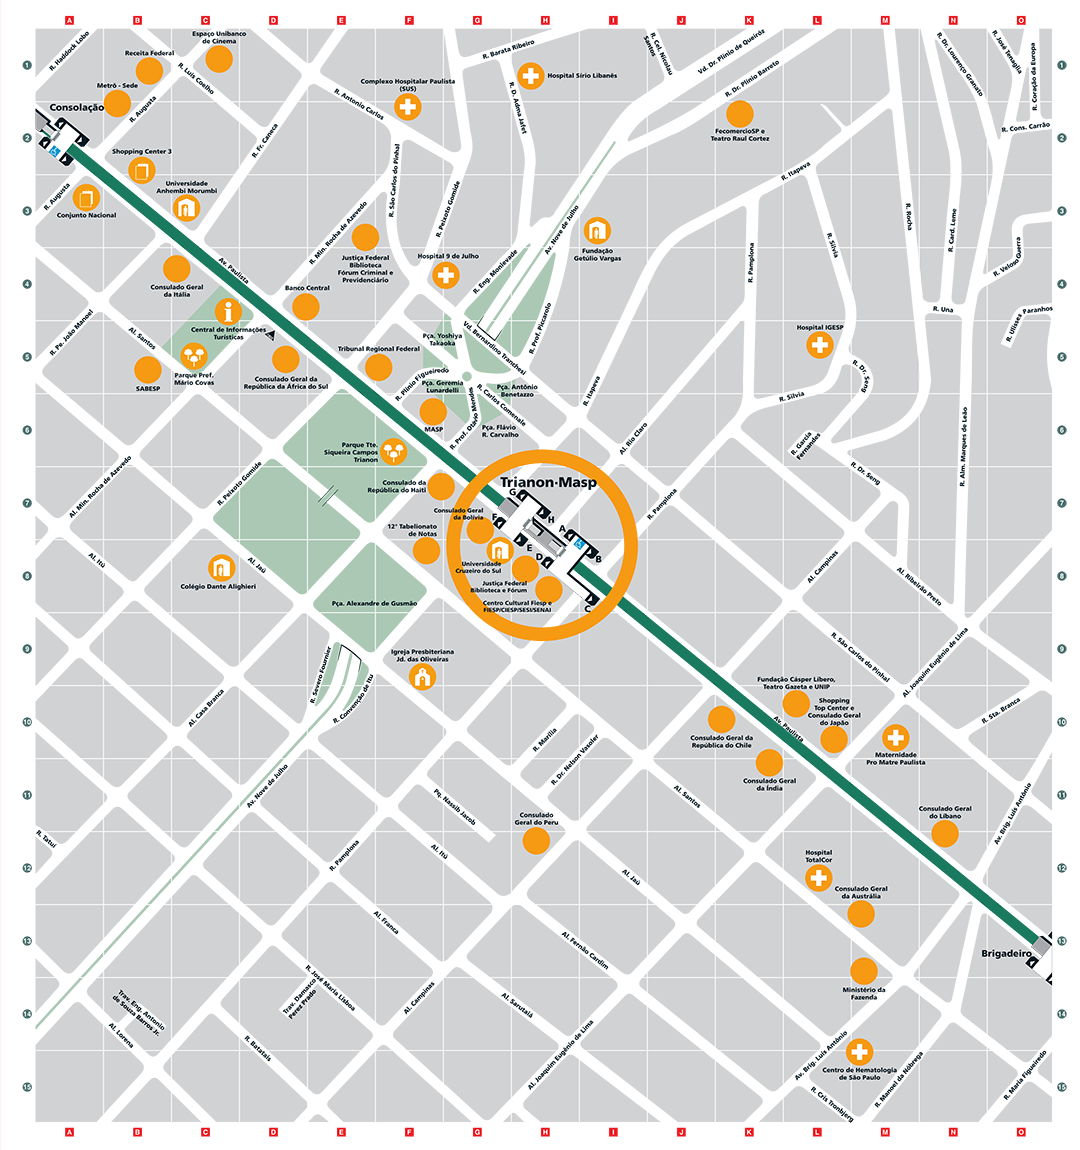 Mapa dos arredores da Estação Trianon-Masp